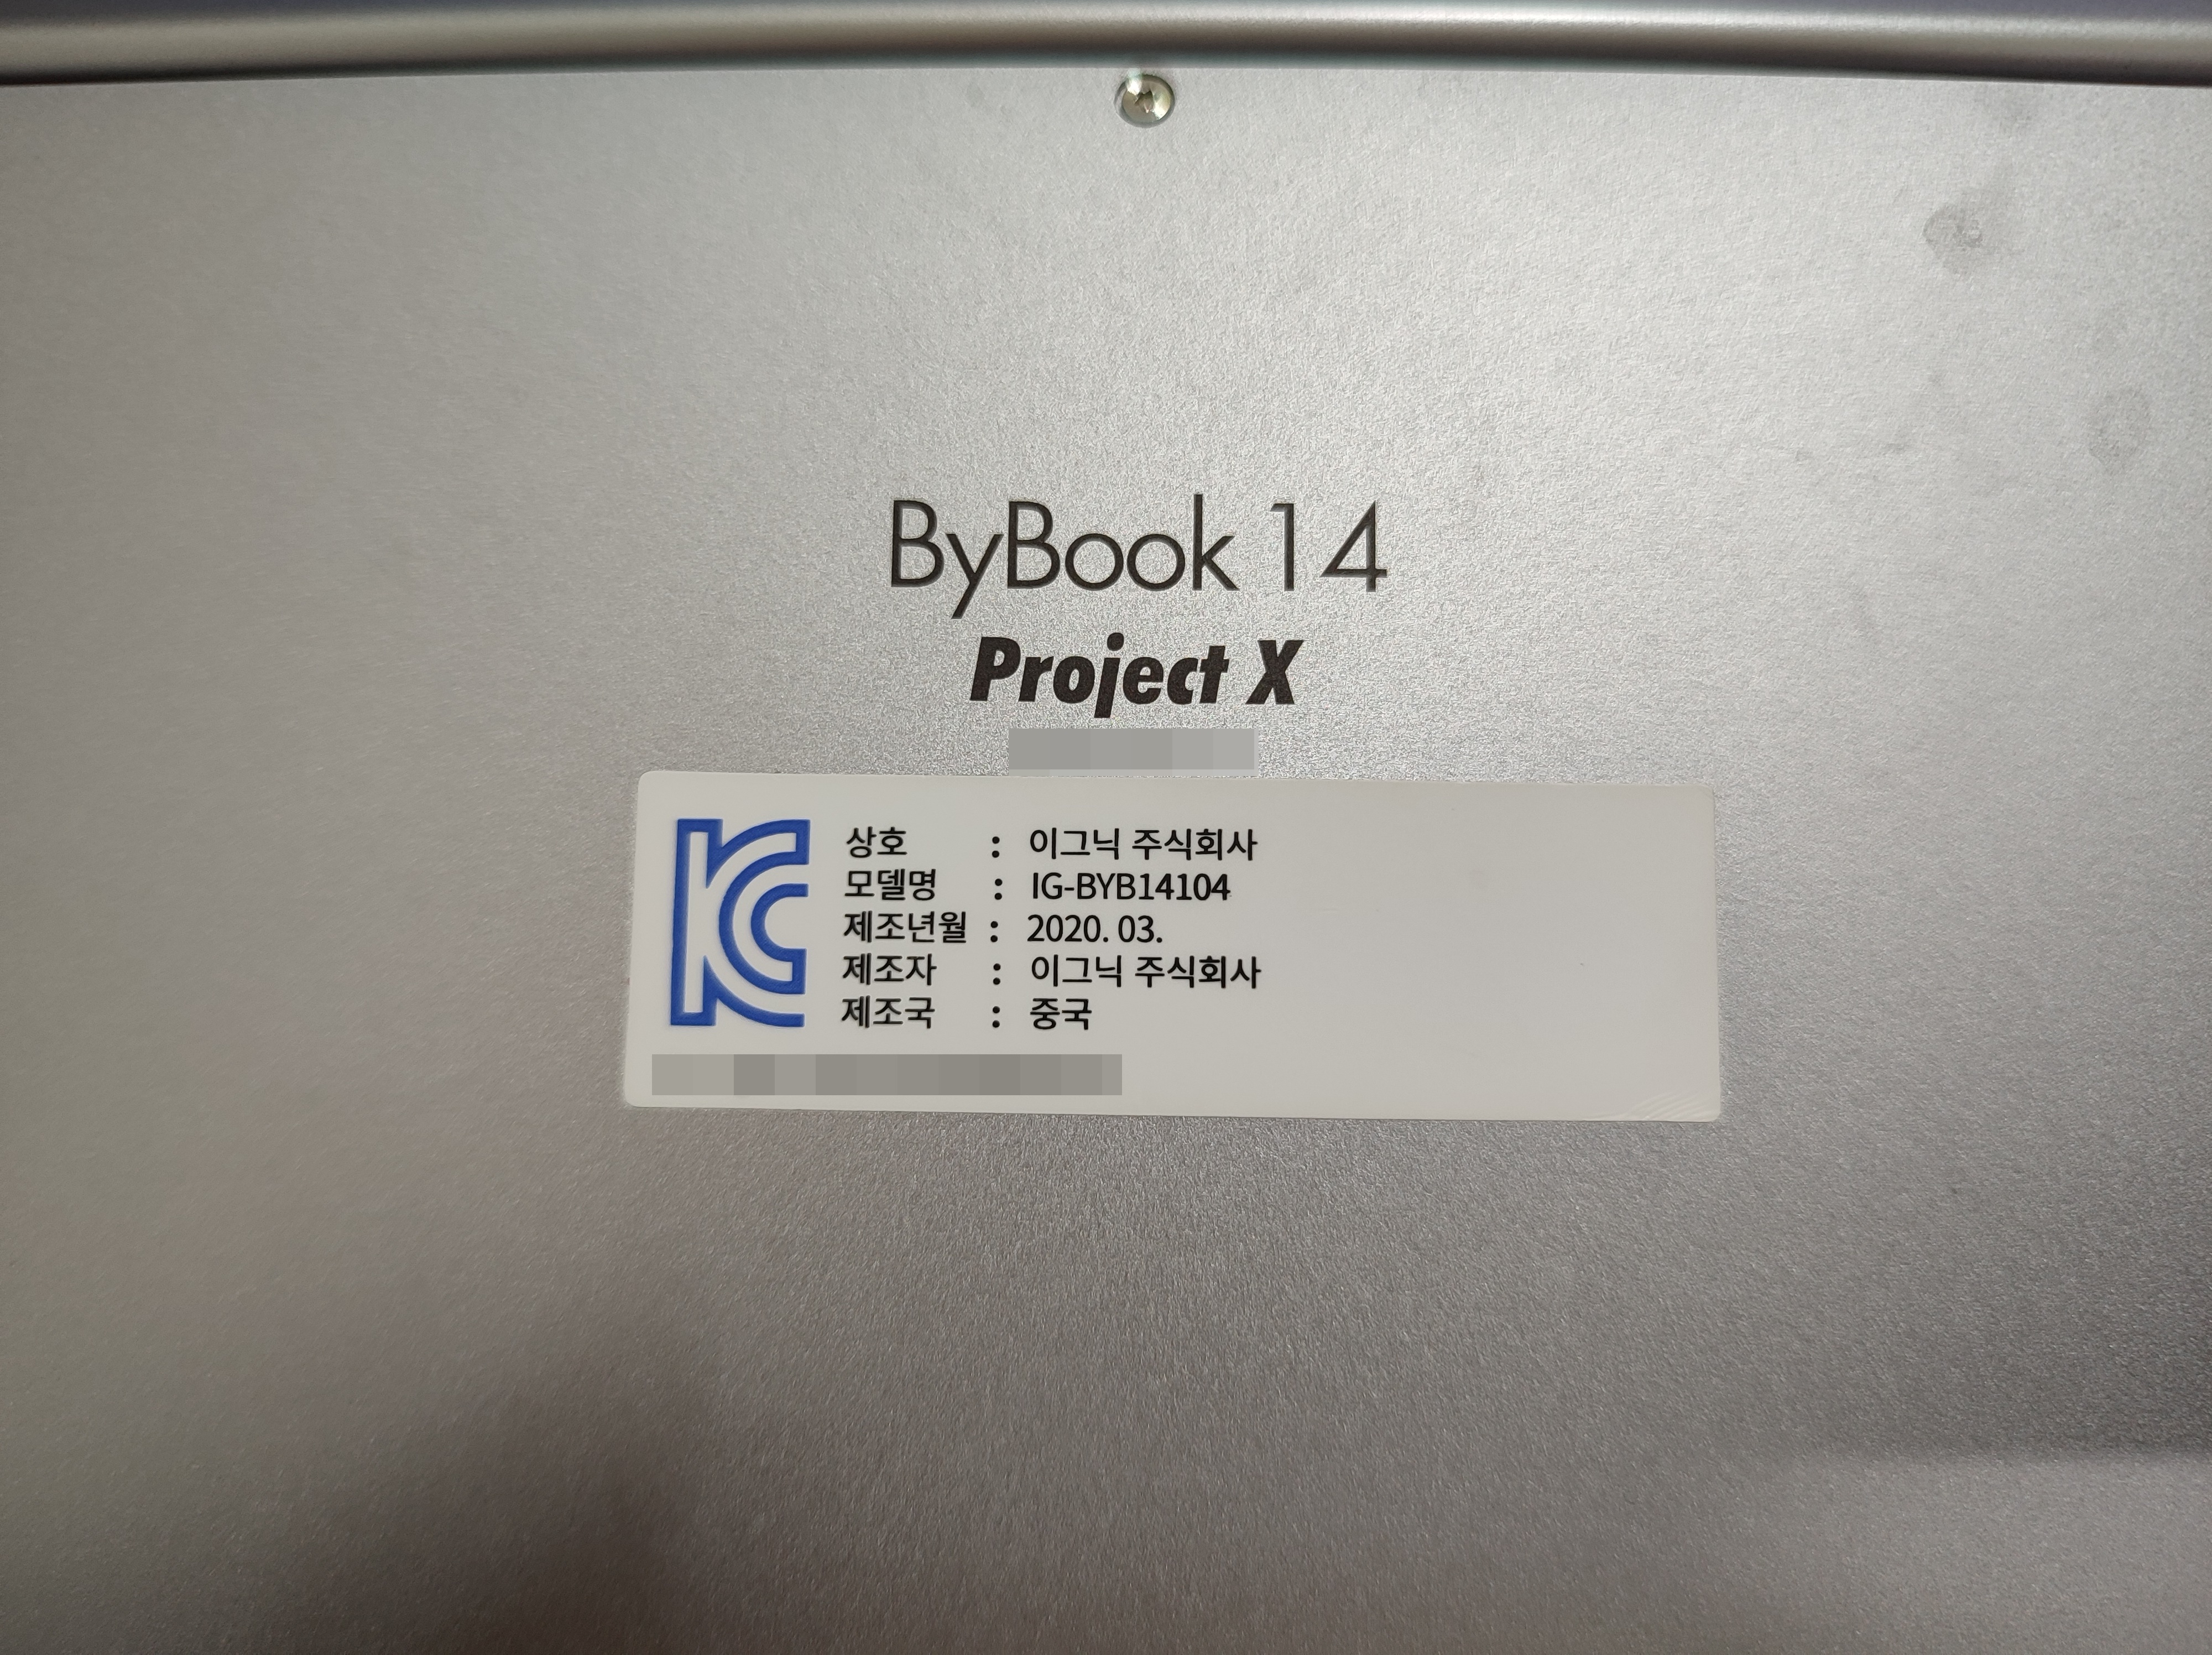 이그닉 회사의 ByBook 14 Project X